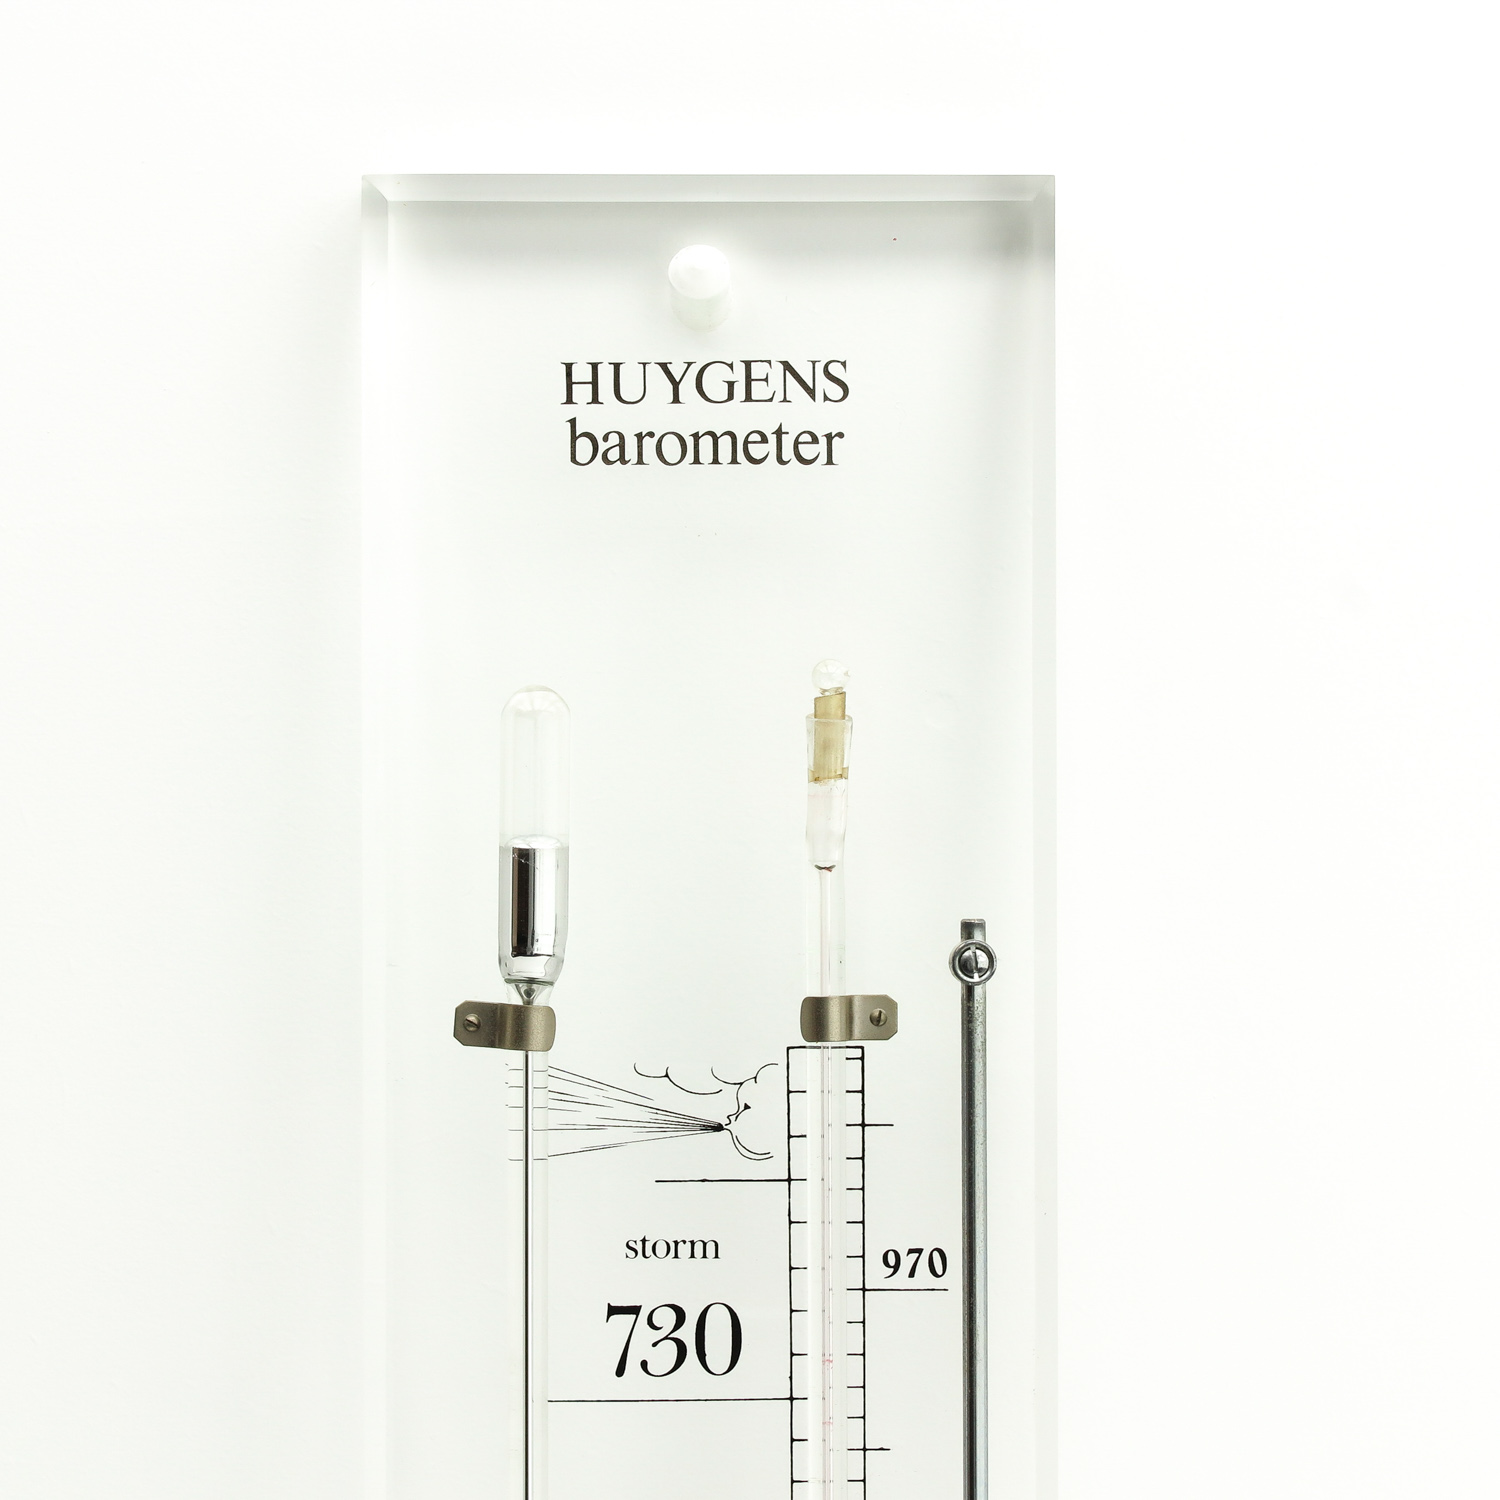 A Barometer Signed Hyugens - Image 5 of 7